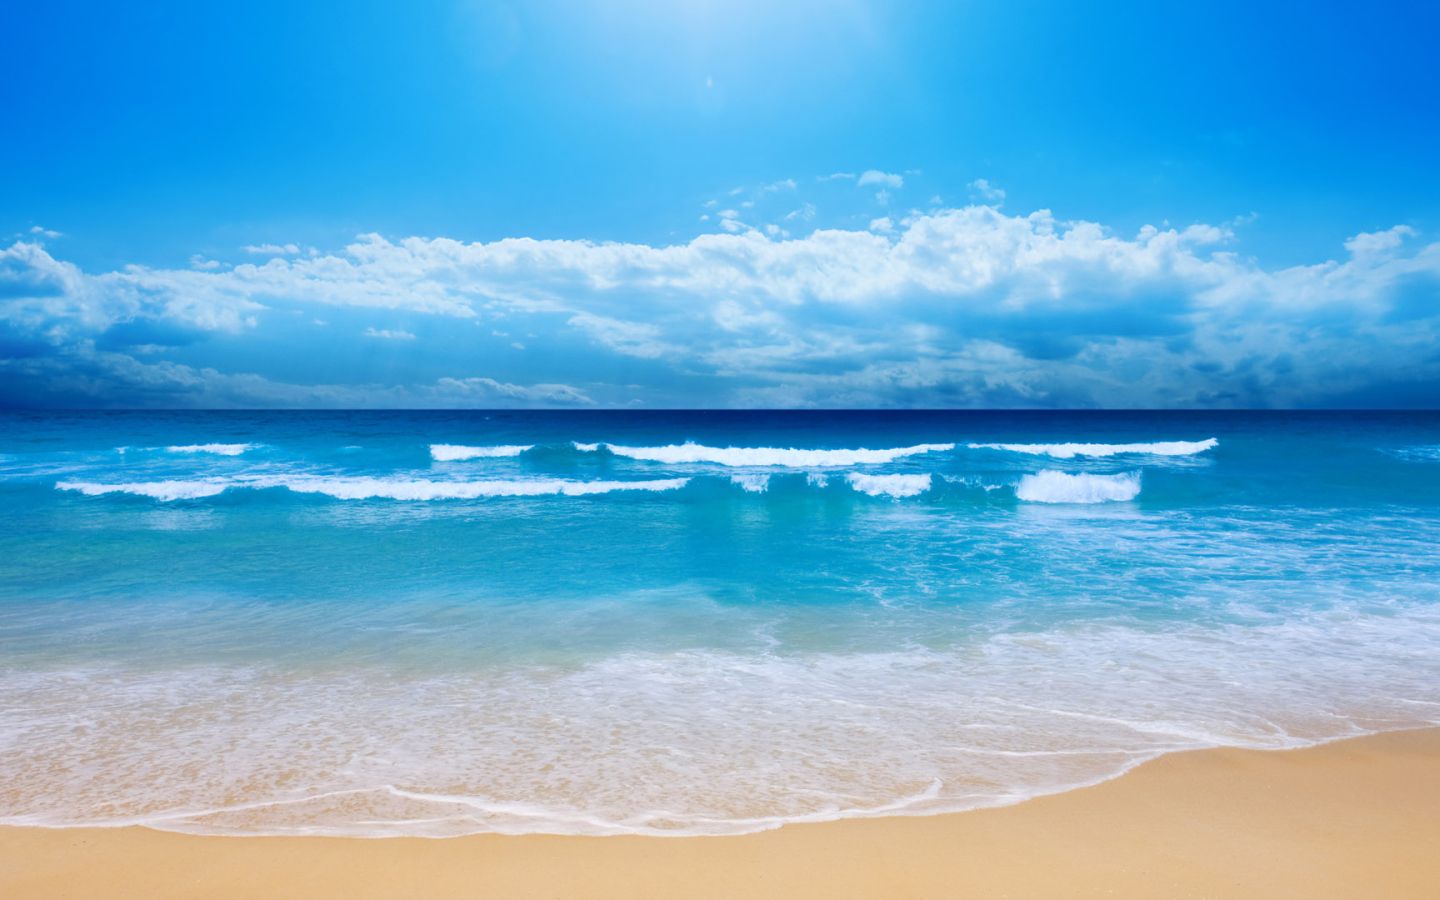 Những hình nền biển với những hoàng hôn tuyệt đẹp, những bãi biển đầy sức sống sẽ khiến bạn đắm chìm trong không gian tuyệt vời đó. Hãy tải về và trang trí chiếc máy tính của bạn với những hình nền biển đẹp nhất, để tạo cho mình một không gian làm việc thú vị hơn.